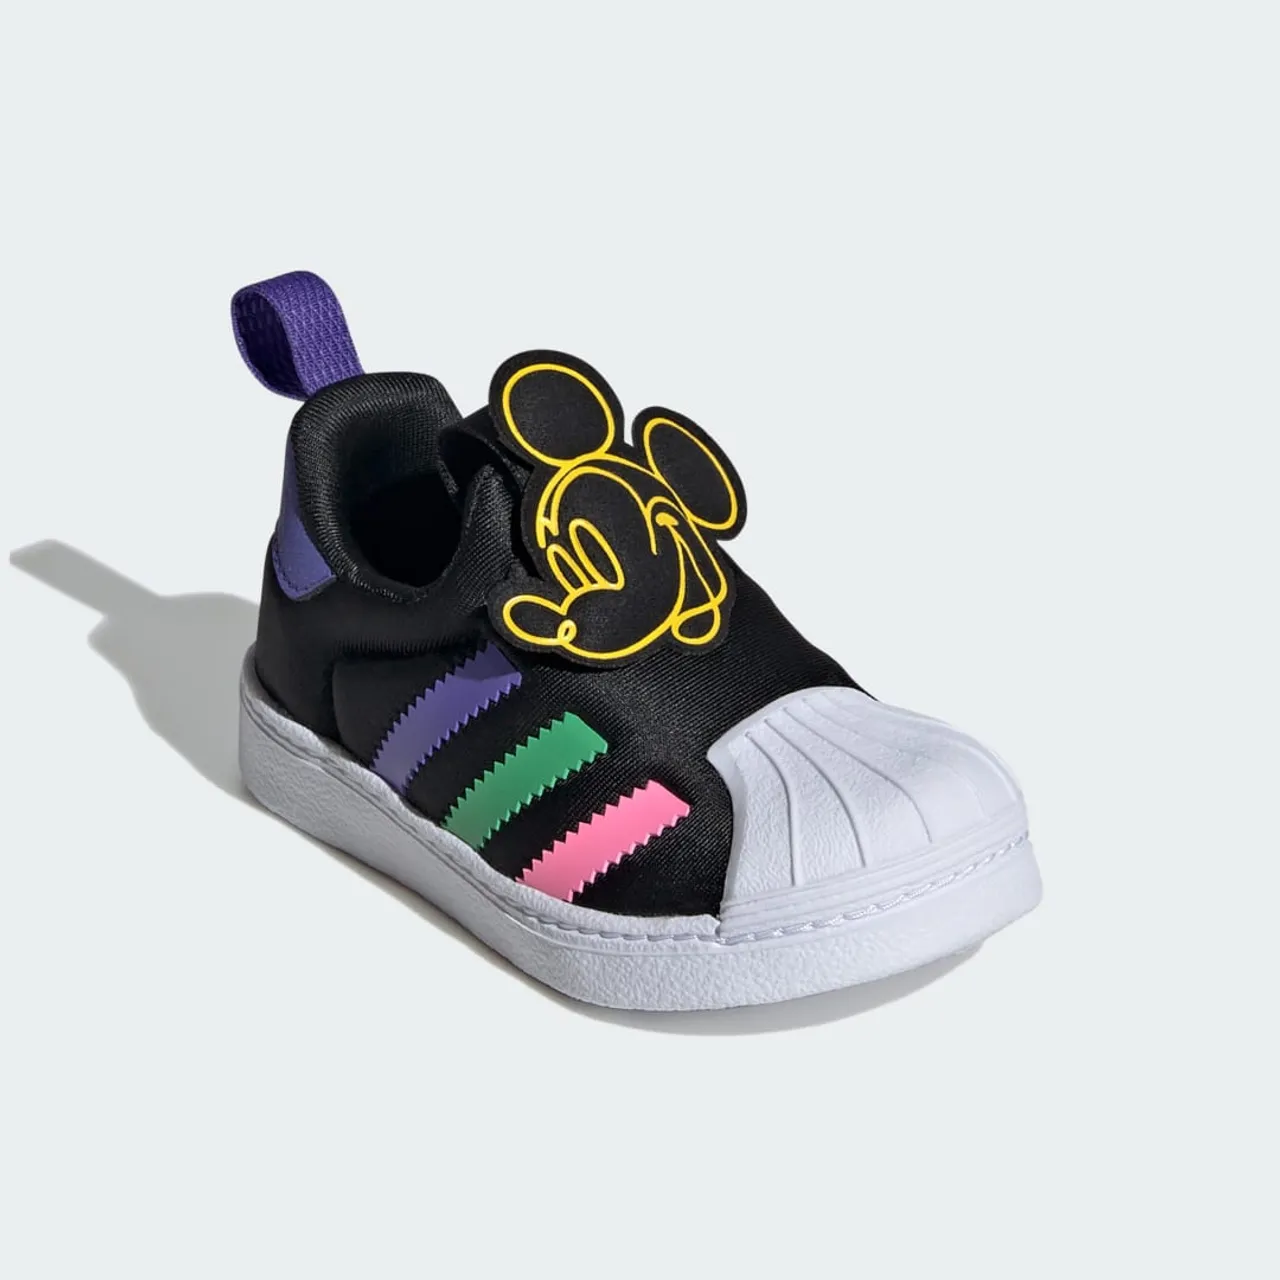 adidas Originals x Disney Mickey Superstar 360 Shoes Kids